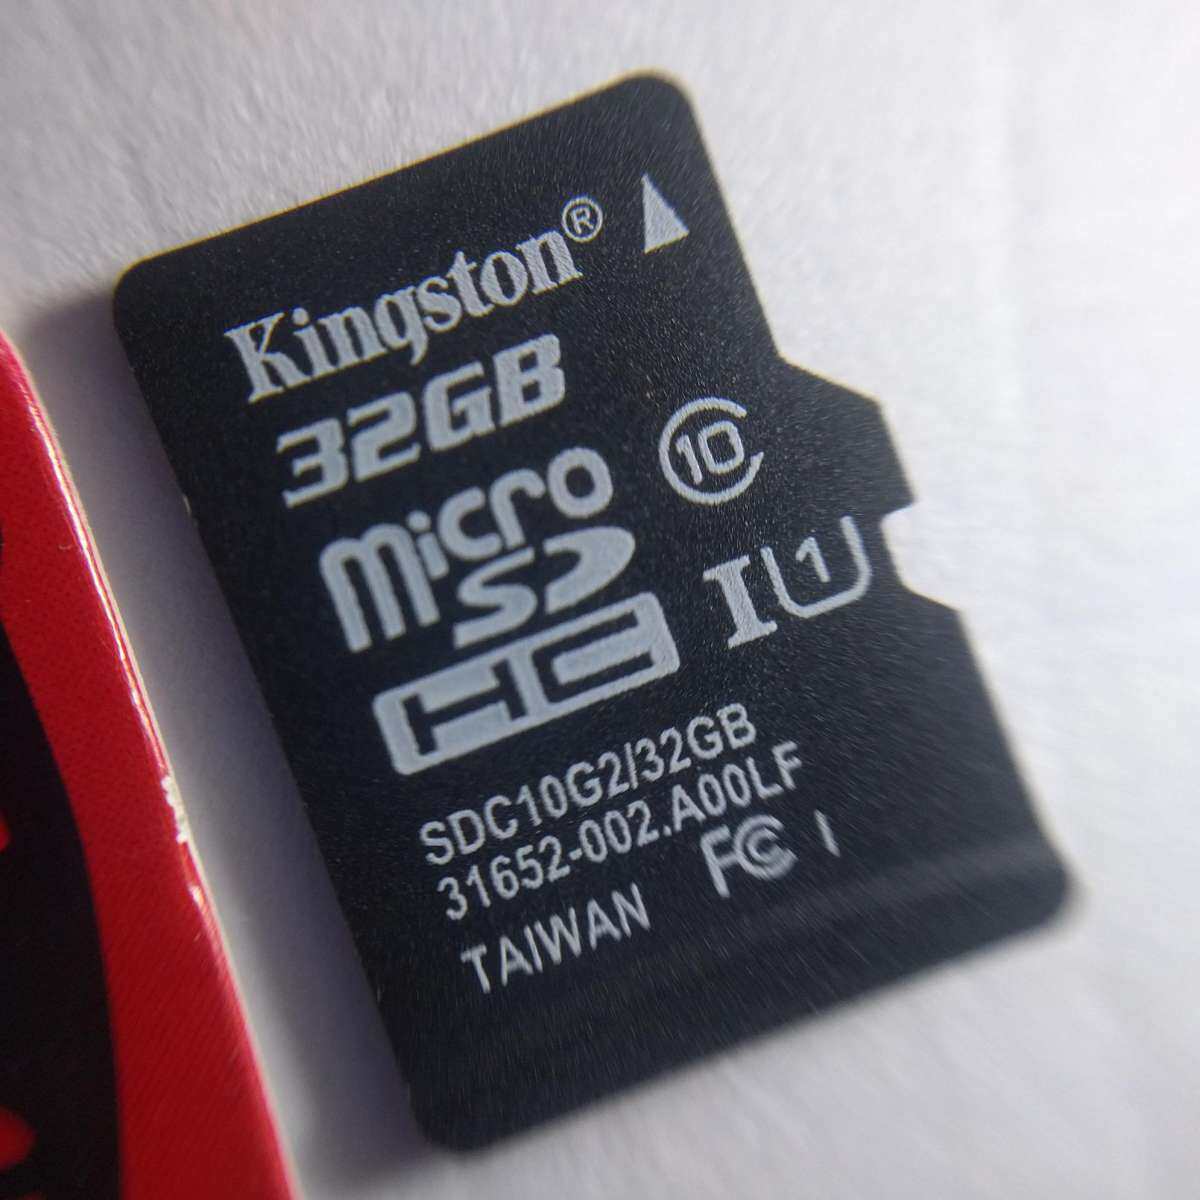 ภาพประกอบของ สินค้าพร้อมส่ง  [[ของแท้]]เมมเพิ่มพื้นที่ความจำ Kingston 32GB Class 10 Micro SD SDHC คิงส์ตัน เมมโมรี่การ์ด 32 GB